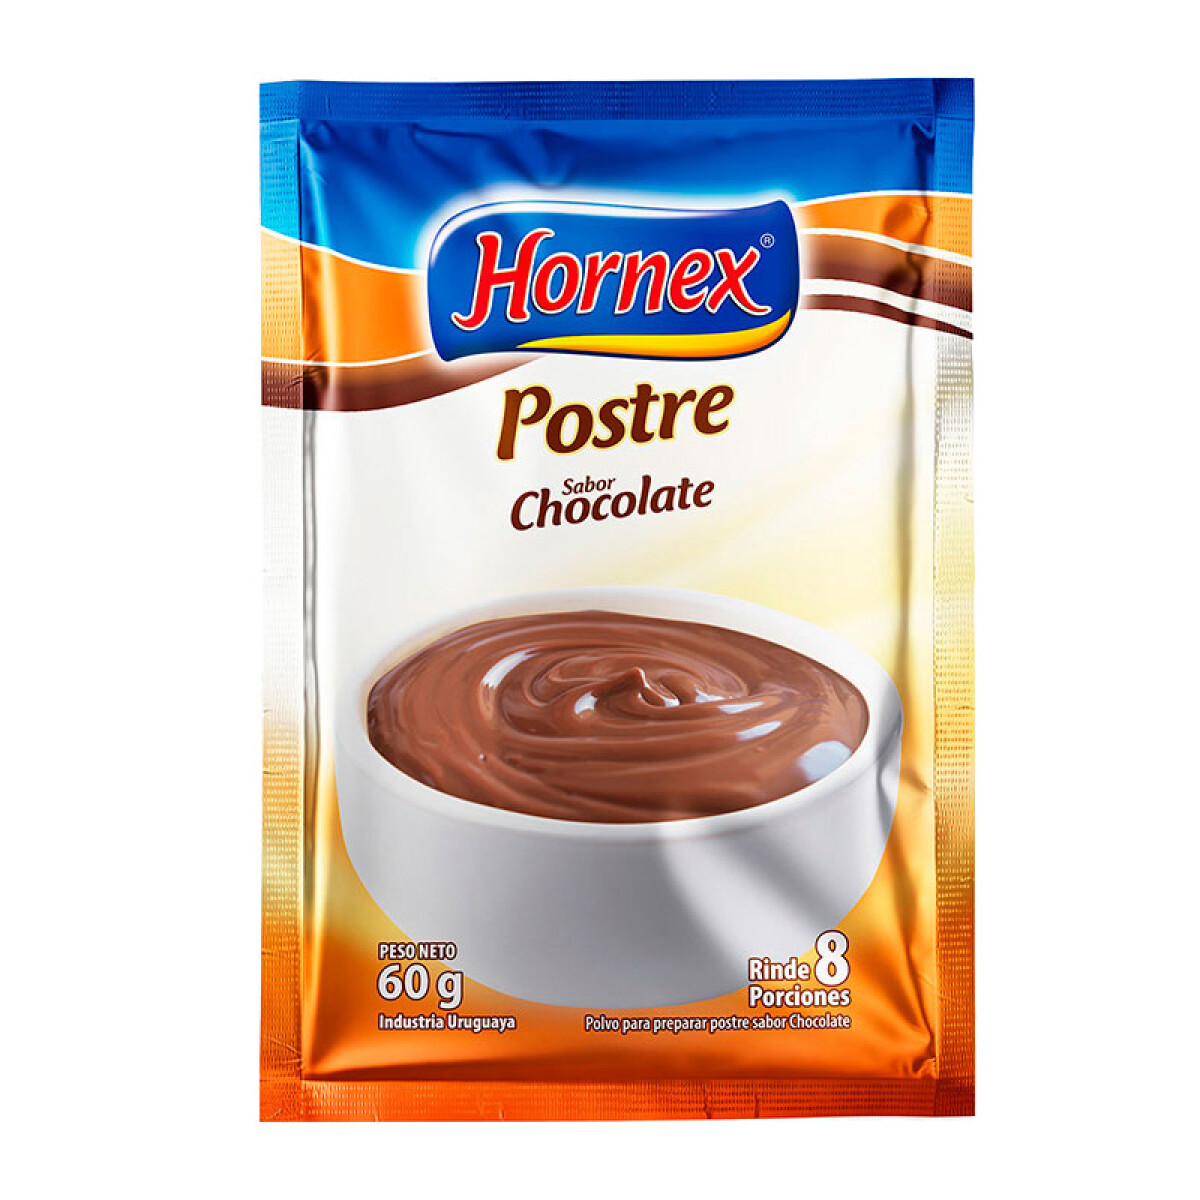 Postre HORNEX 60grs rinde 8 porciones - Chocolate 